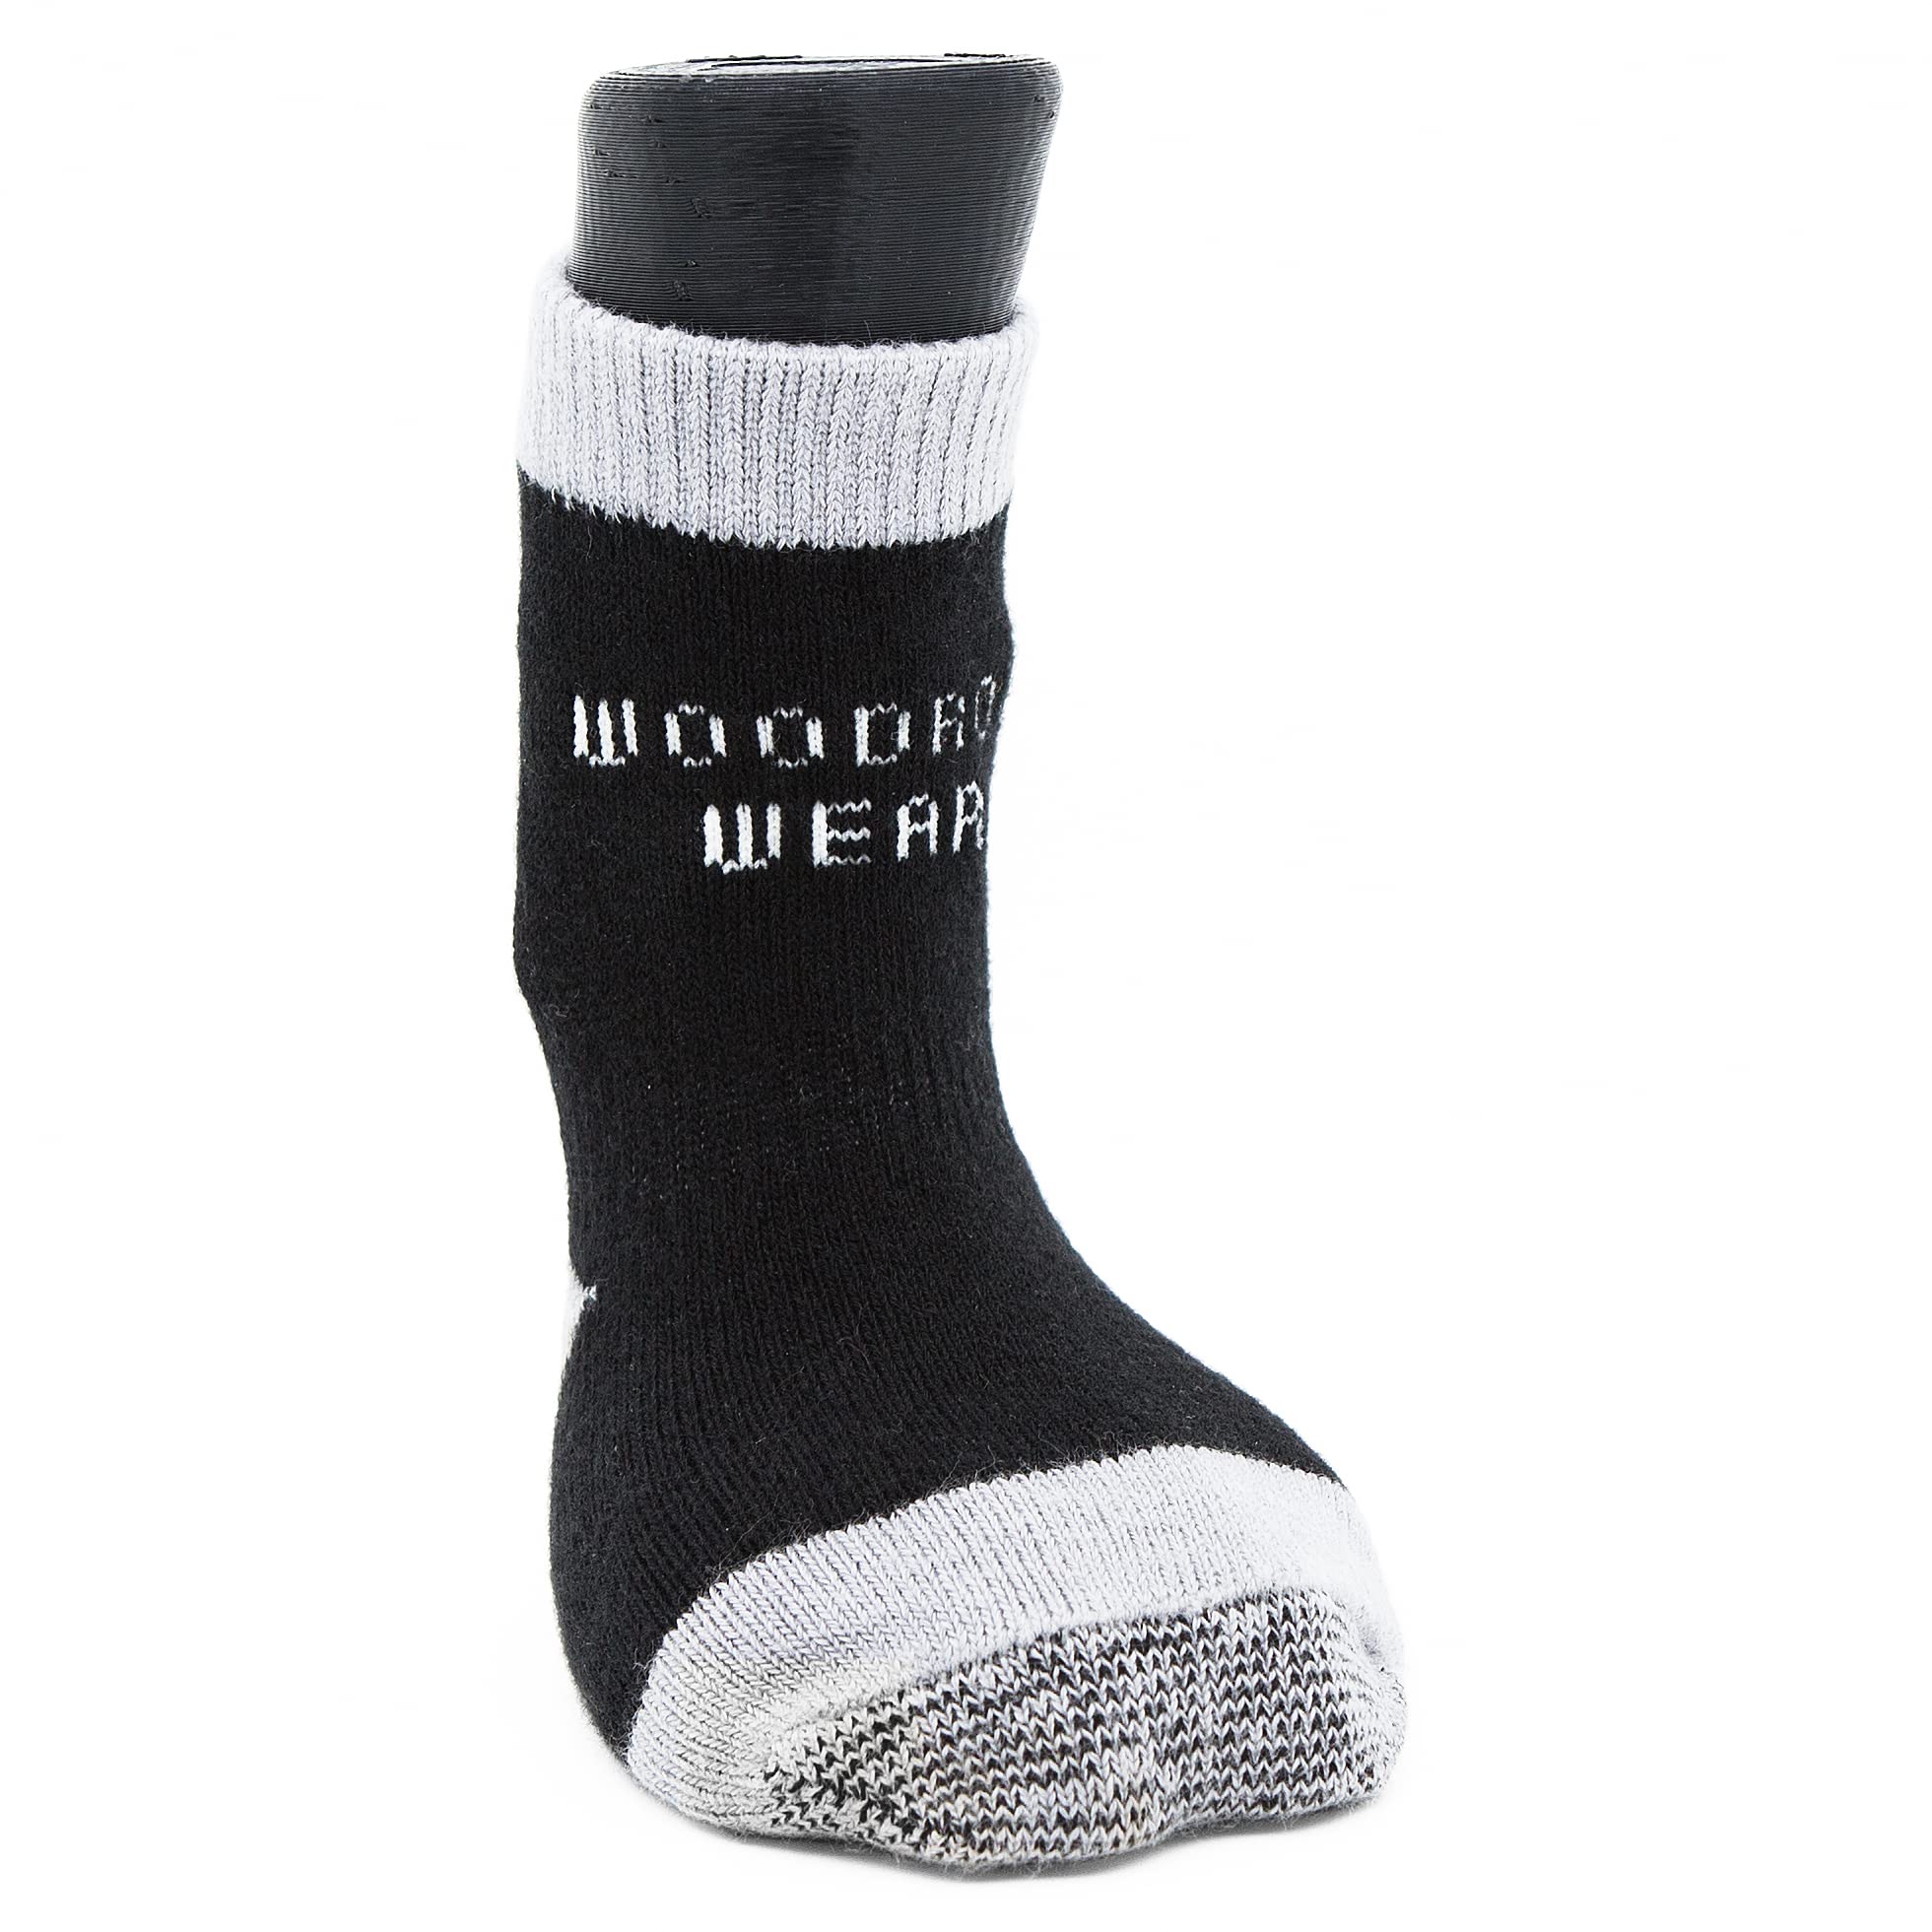 Woodrow Wear, Power Paws Advanced Dog Socks, Black Grey  - Like New